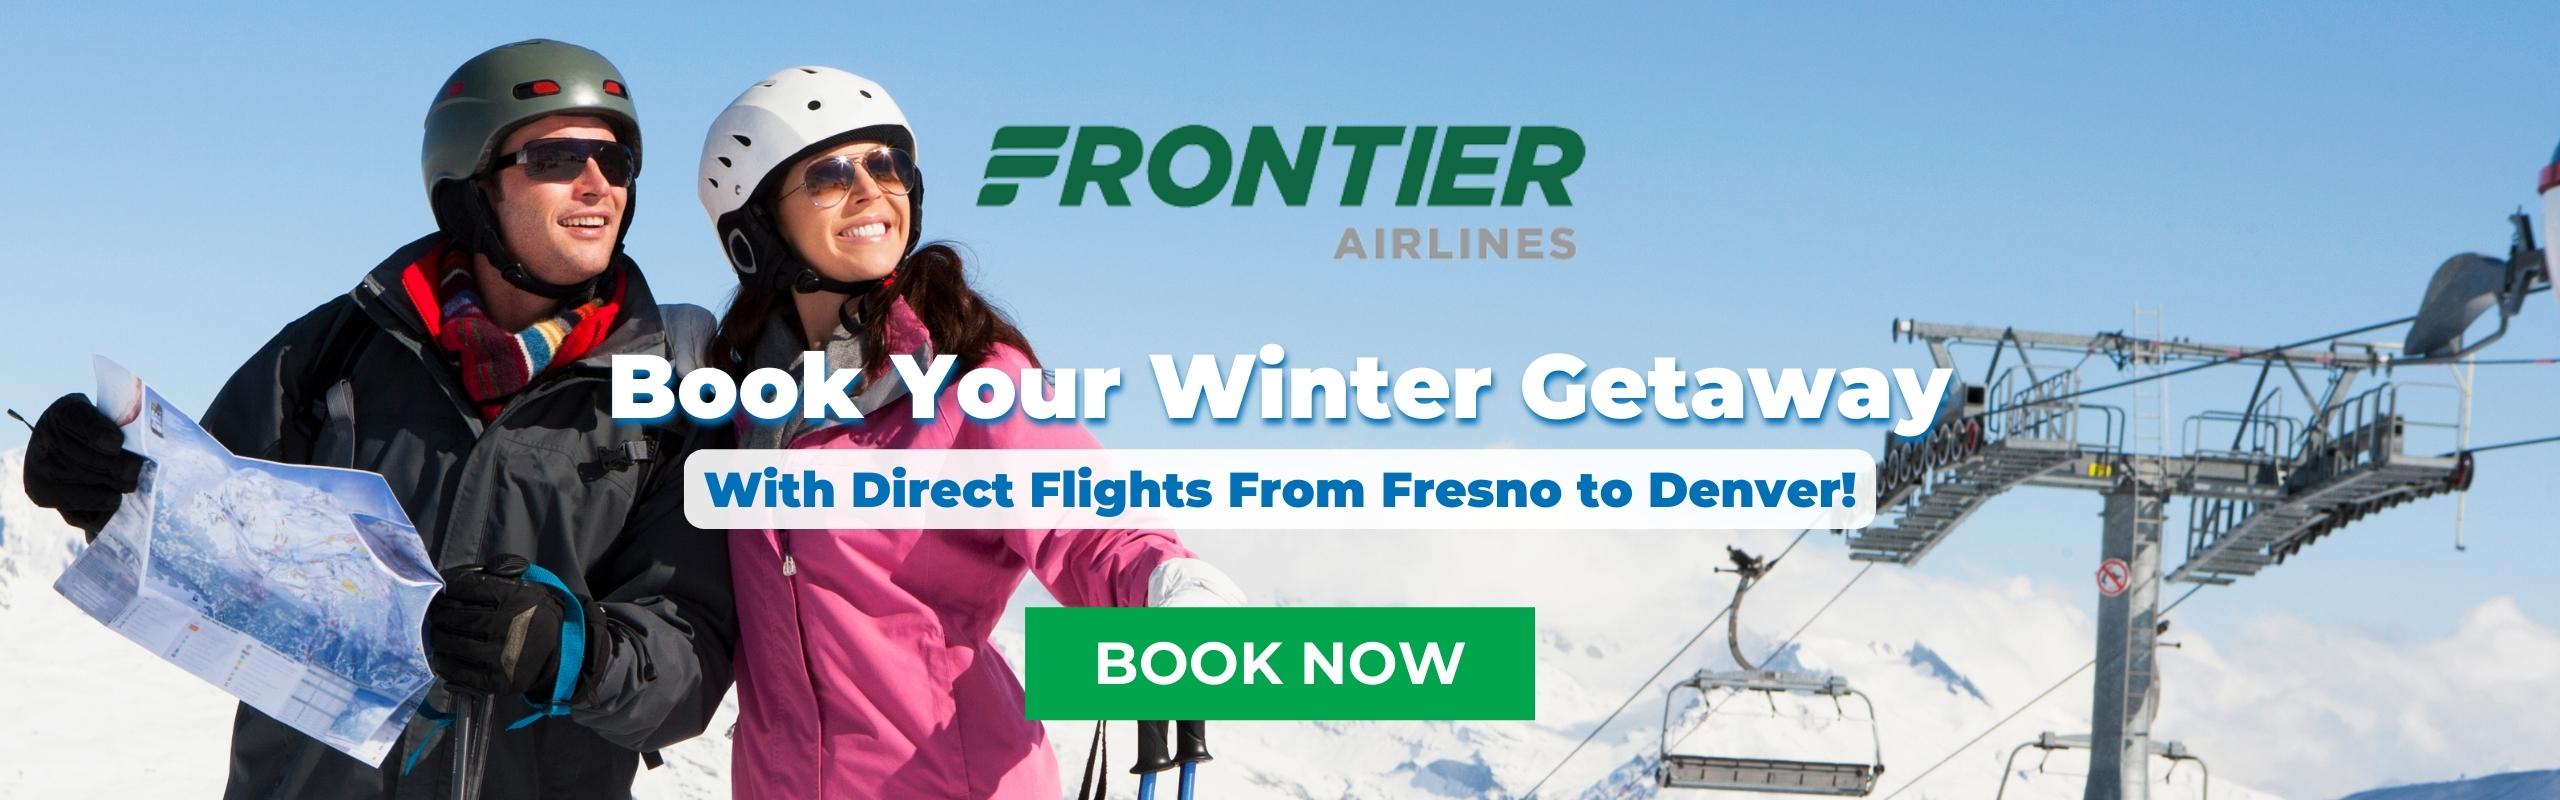 frontier airlines deals winter getaway